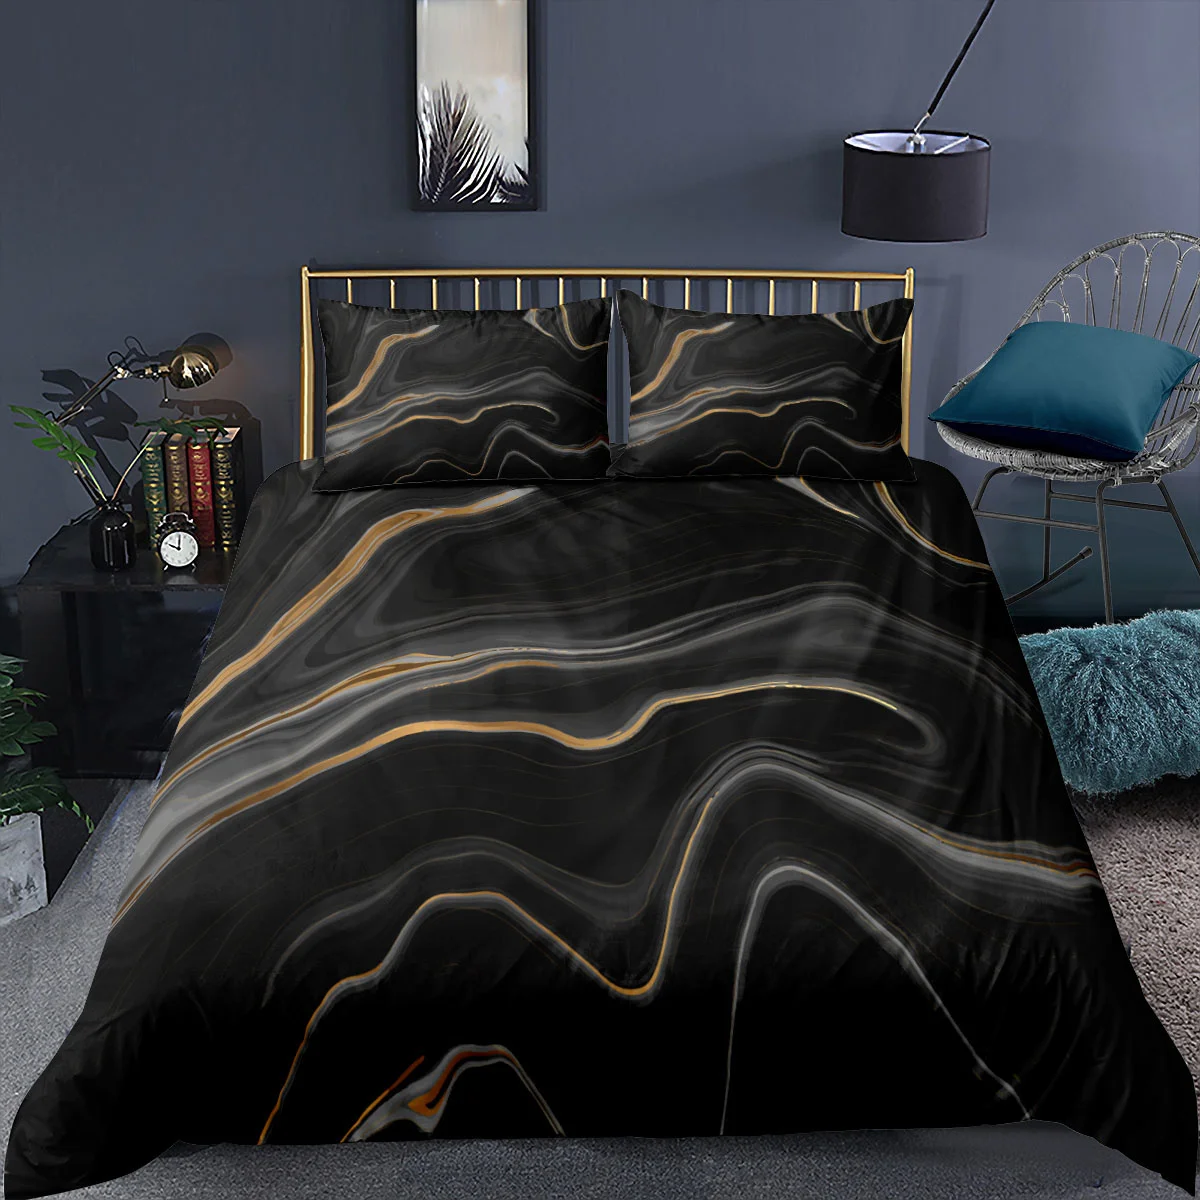 Luxury Black Marble Duvet Cover Set 3d Digital Printing Bed Linen Fashion Marbling Comforter Cover Design Bedding Sets Bed Set